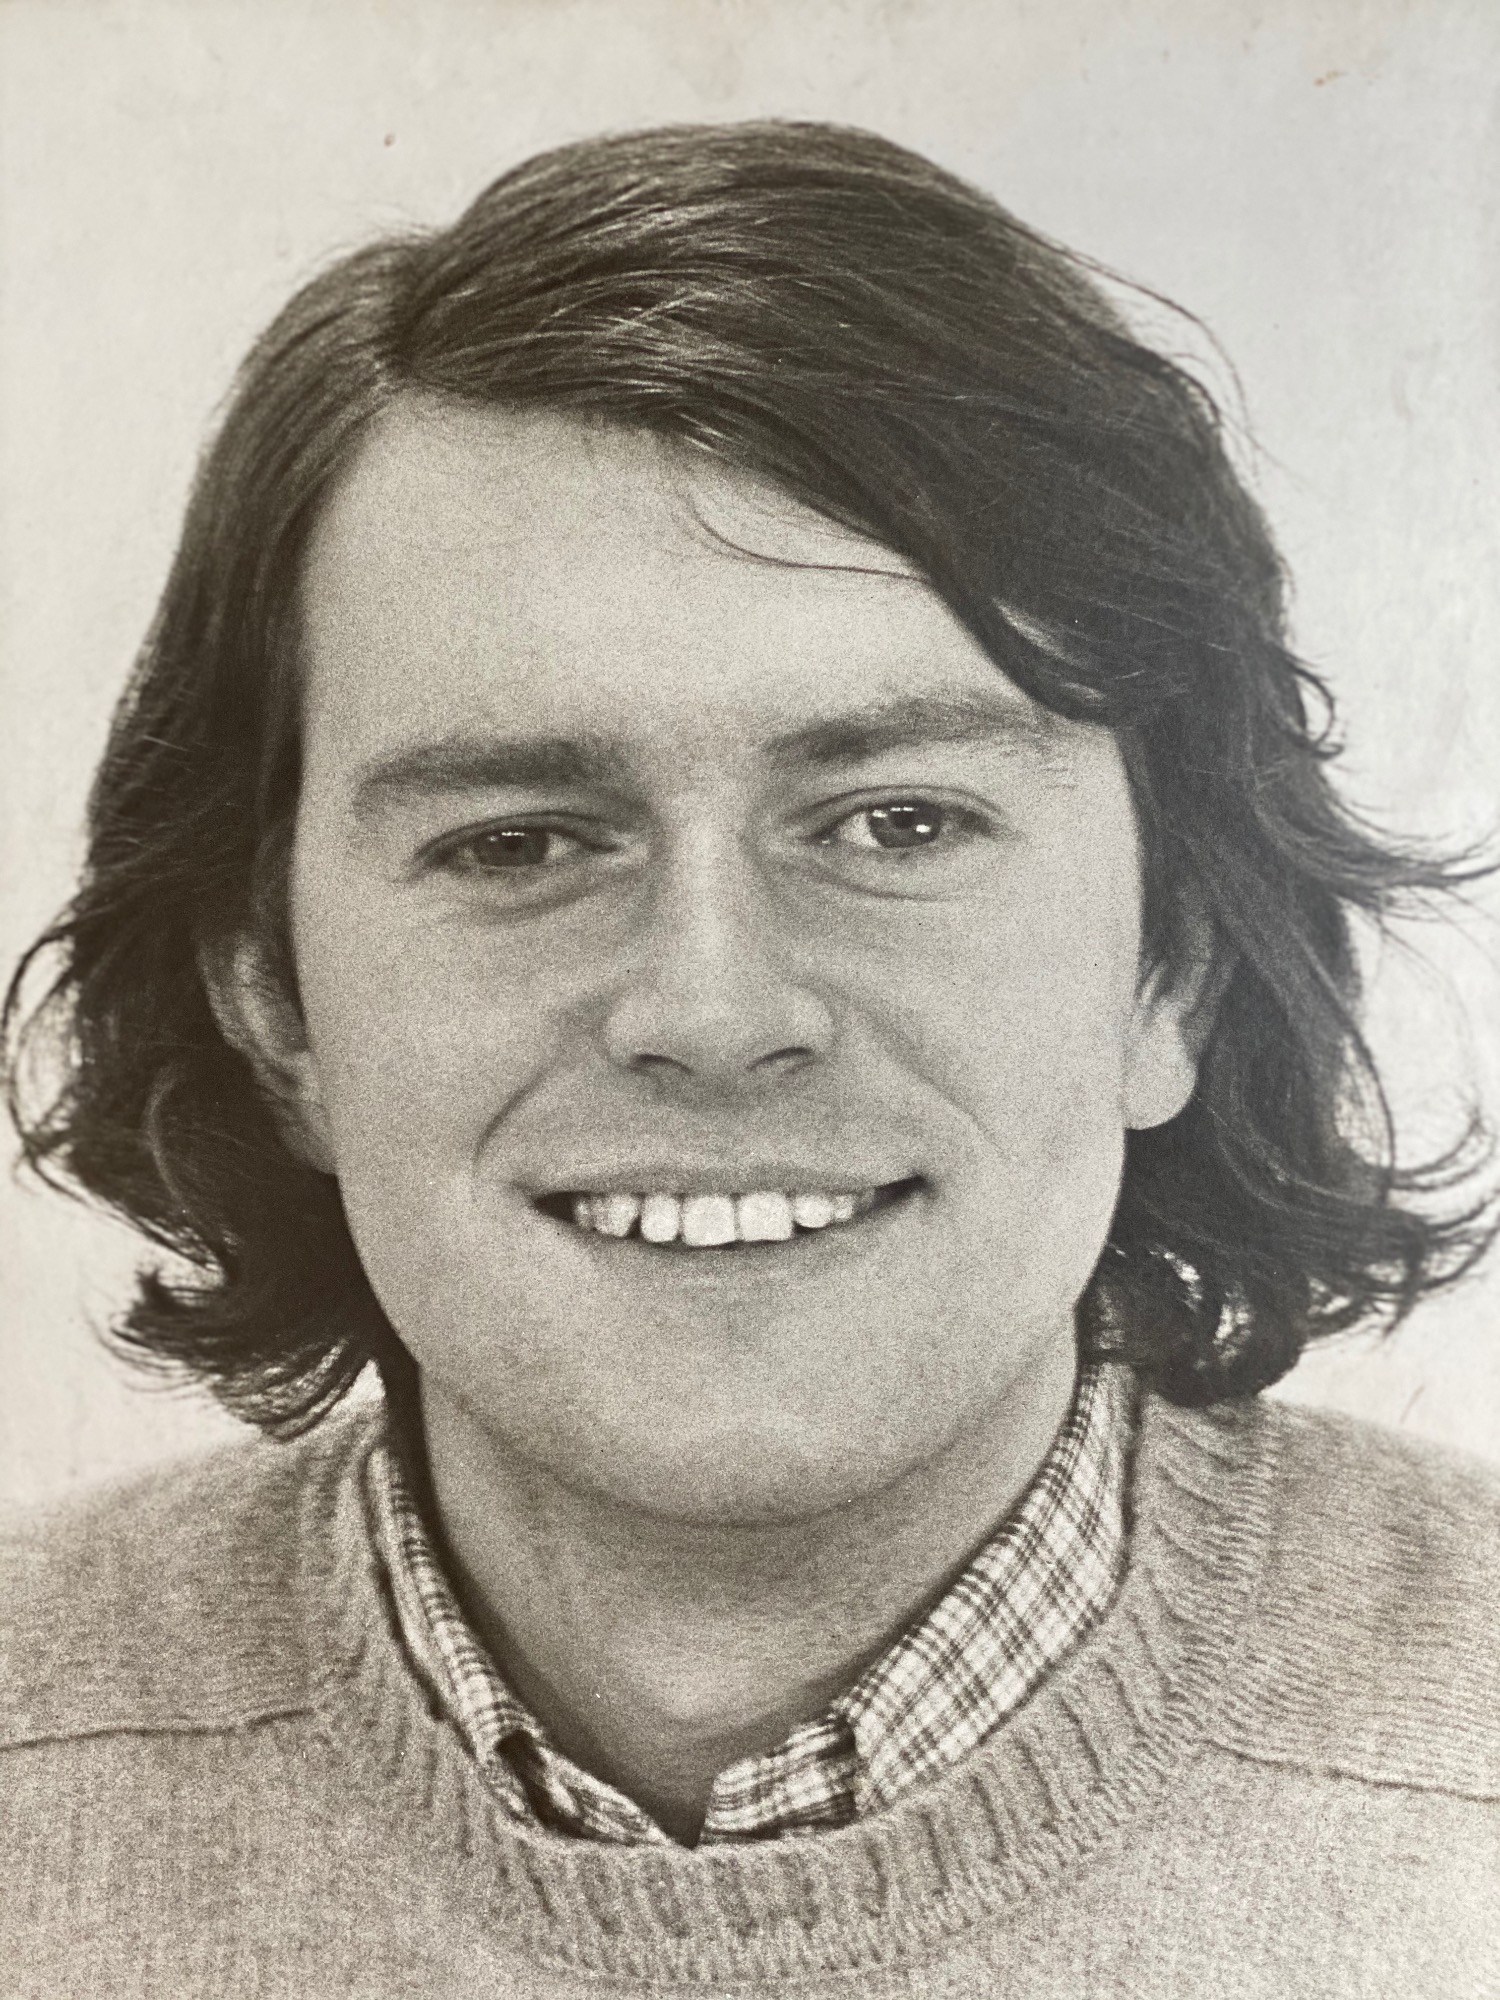 424 4 Michael Lambrechtsen in 1974